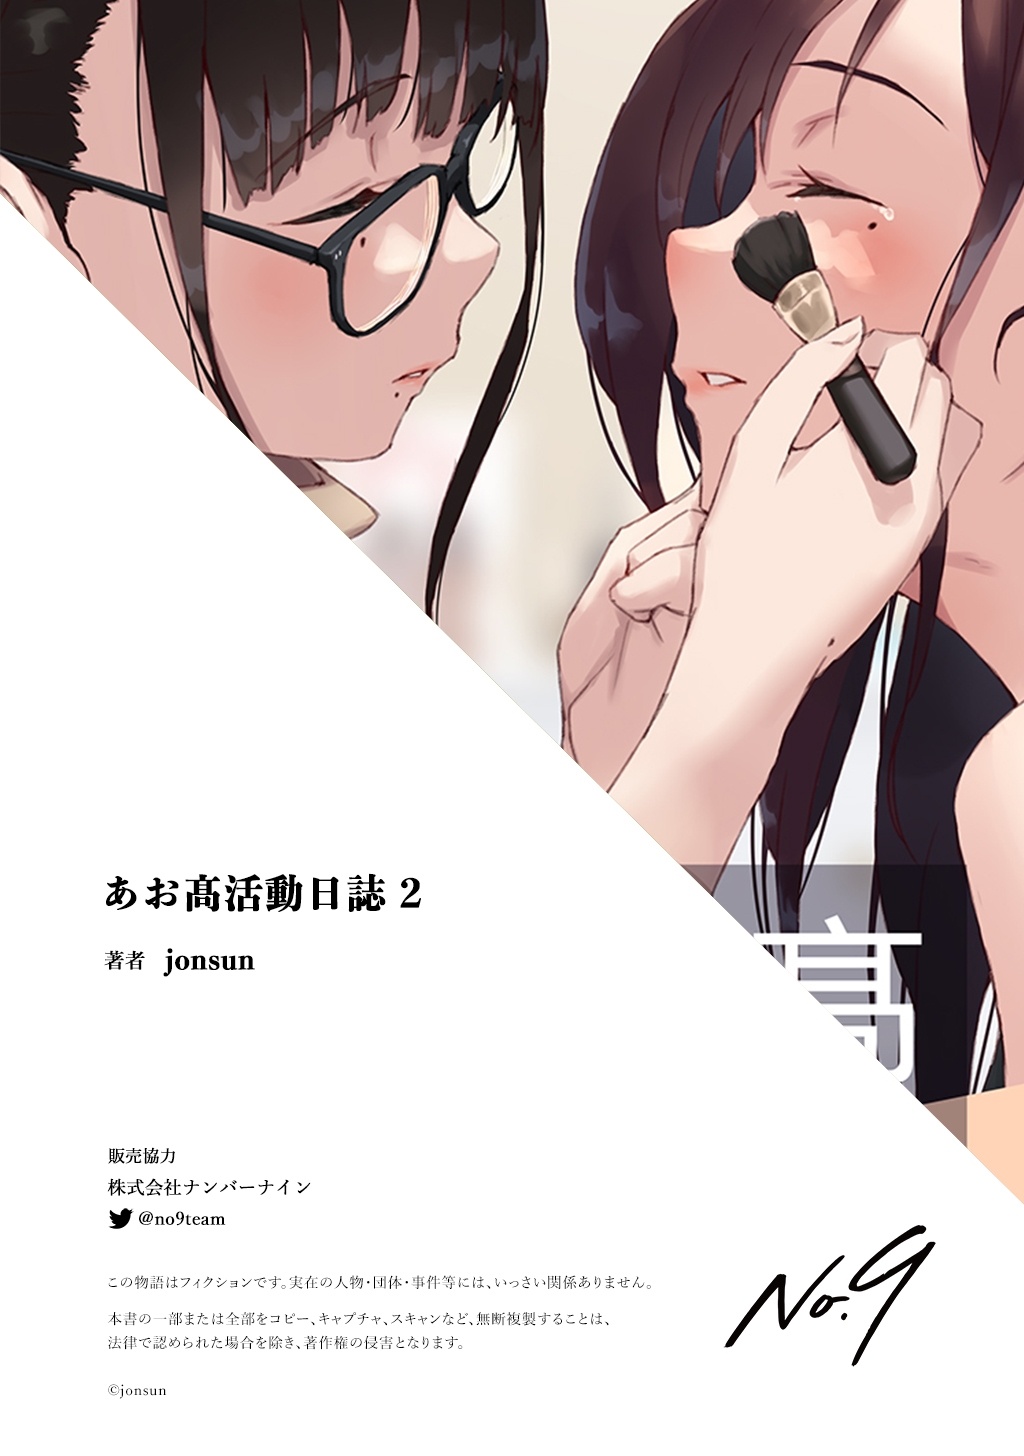 [jonsun] Aoitori High School Illustrations 2 41